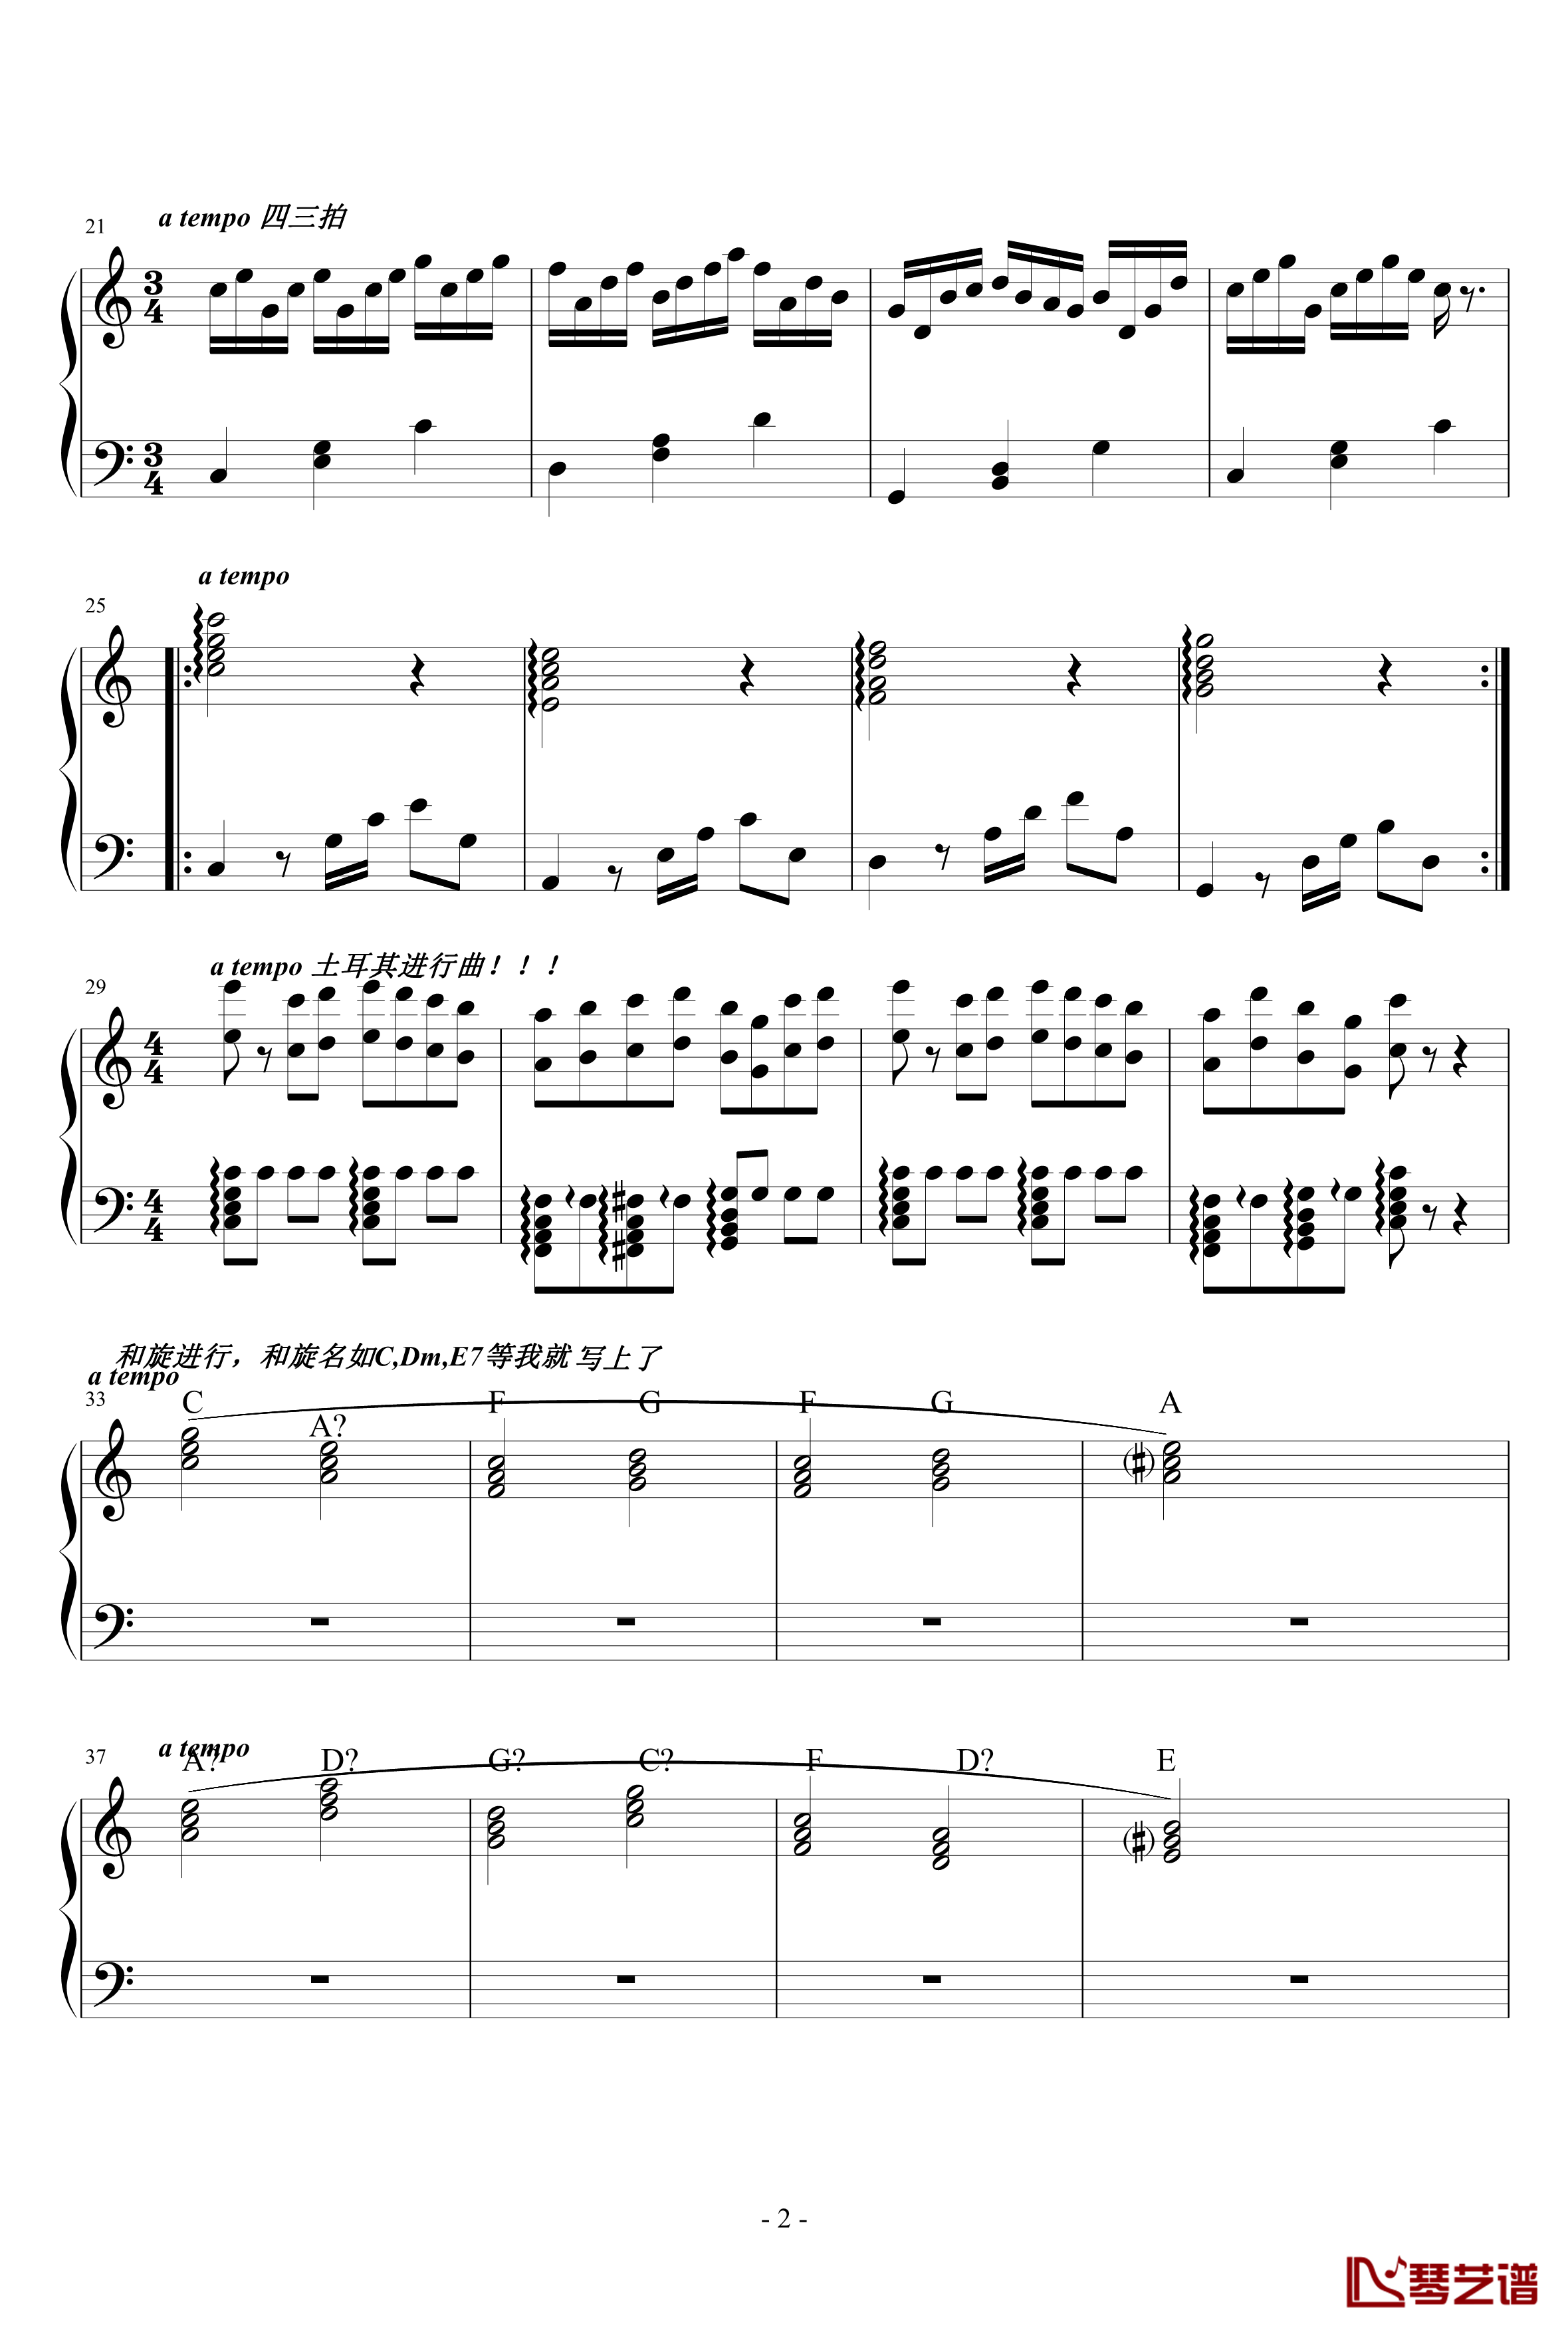 几个即兴伴奏的前奏及和旋进行钢琴谱-水墨丹青music2